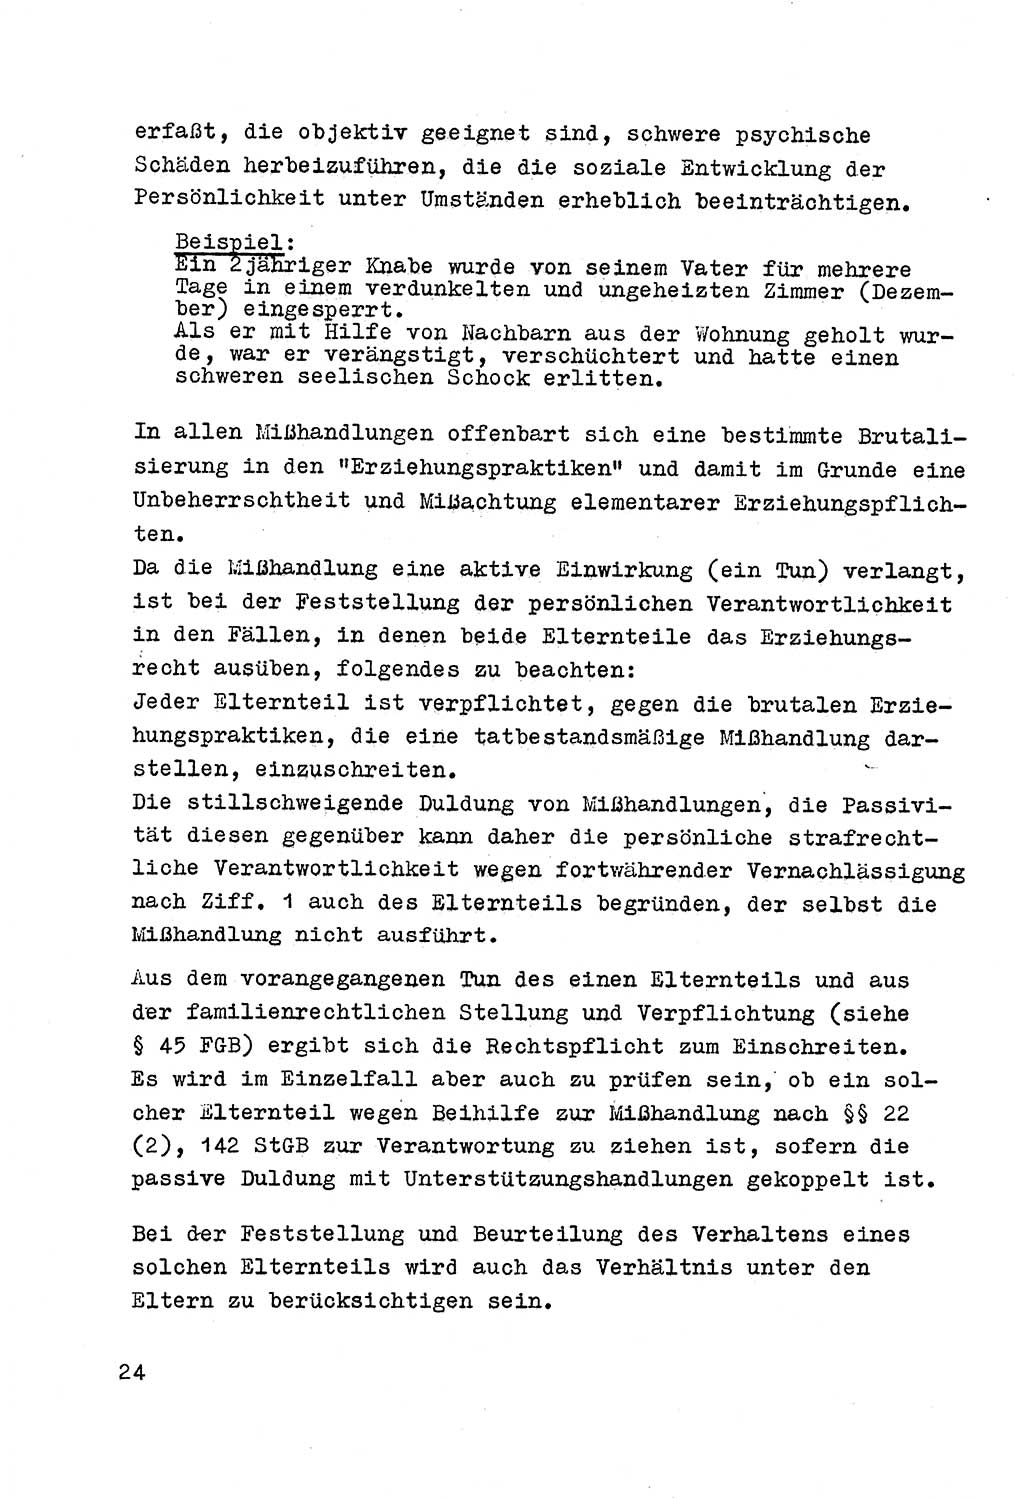 Strafrecht der DDR (Deutsche Demokratische Republik), Besonderer Teil, Lehrmaterial, Heft 4 1969, Seite 24 (Strafr. DDR BT Lehrmat. H. 4 1969, S. 24)